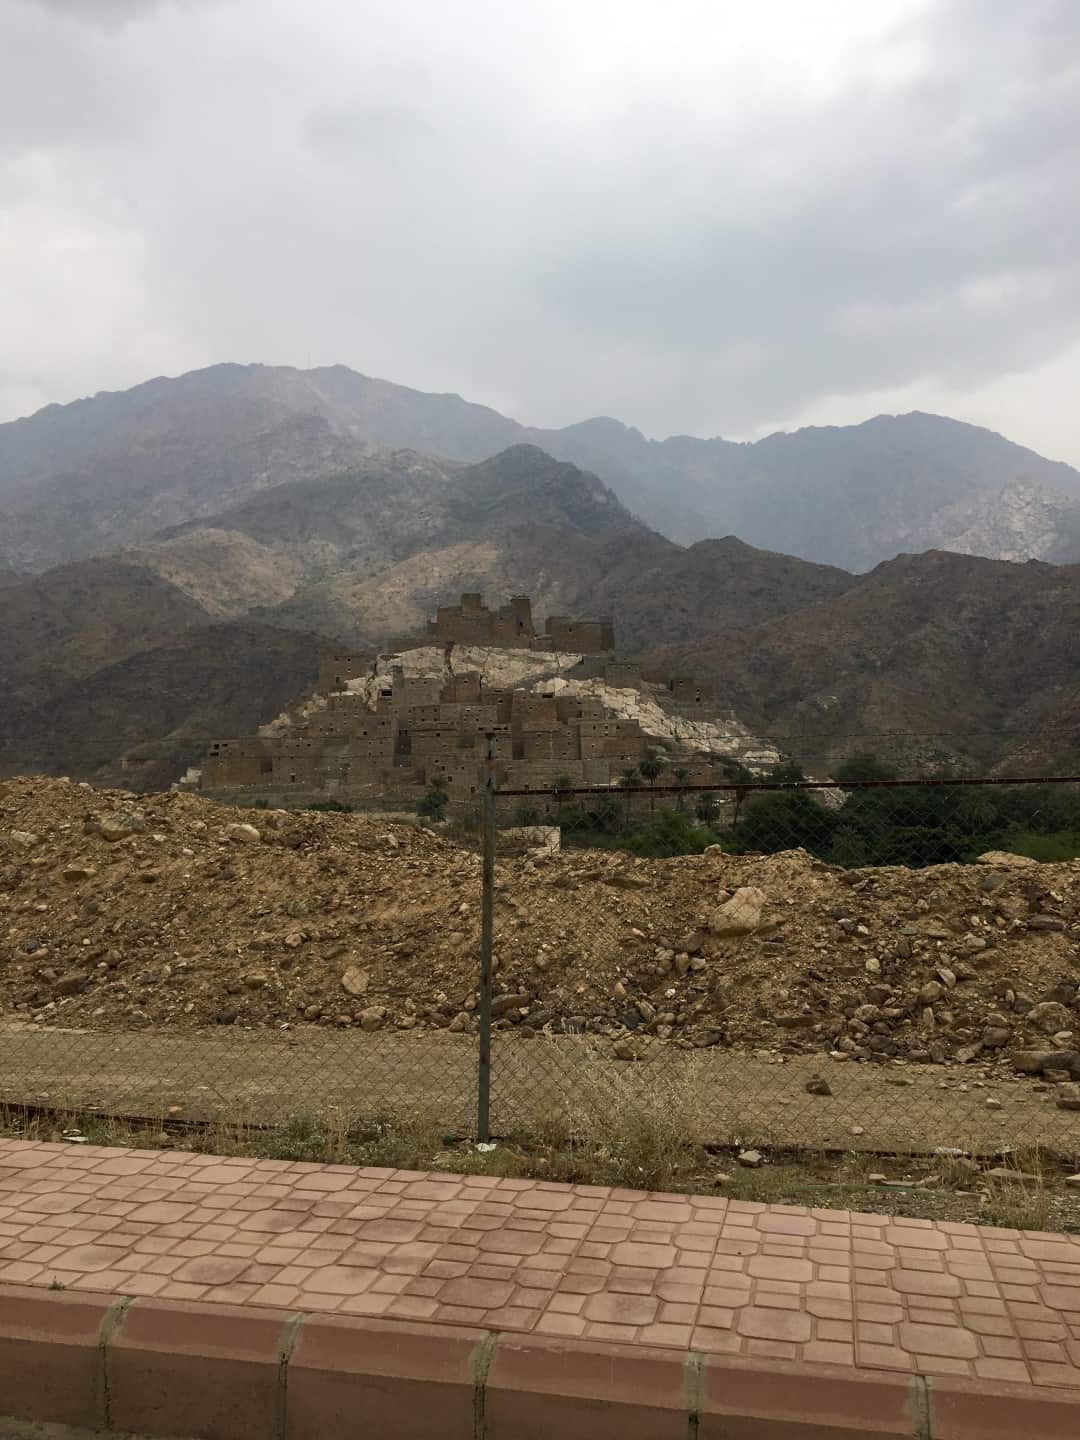 A Road-trip to Al Baha, Abha and back to Yanbu